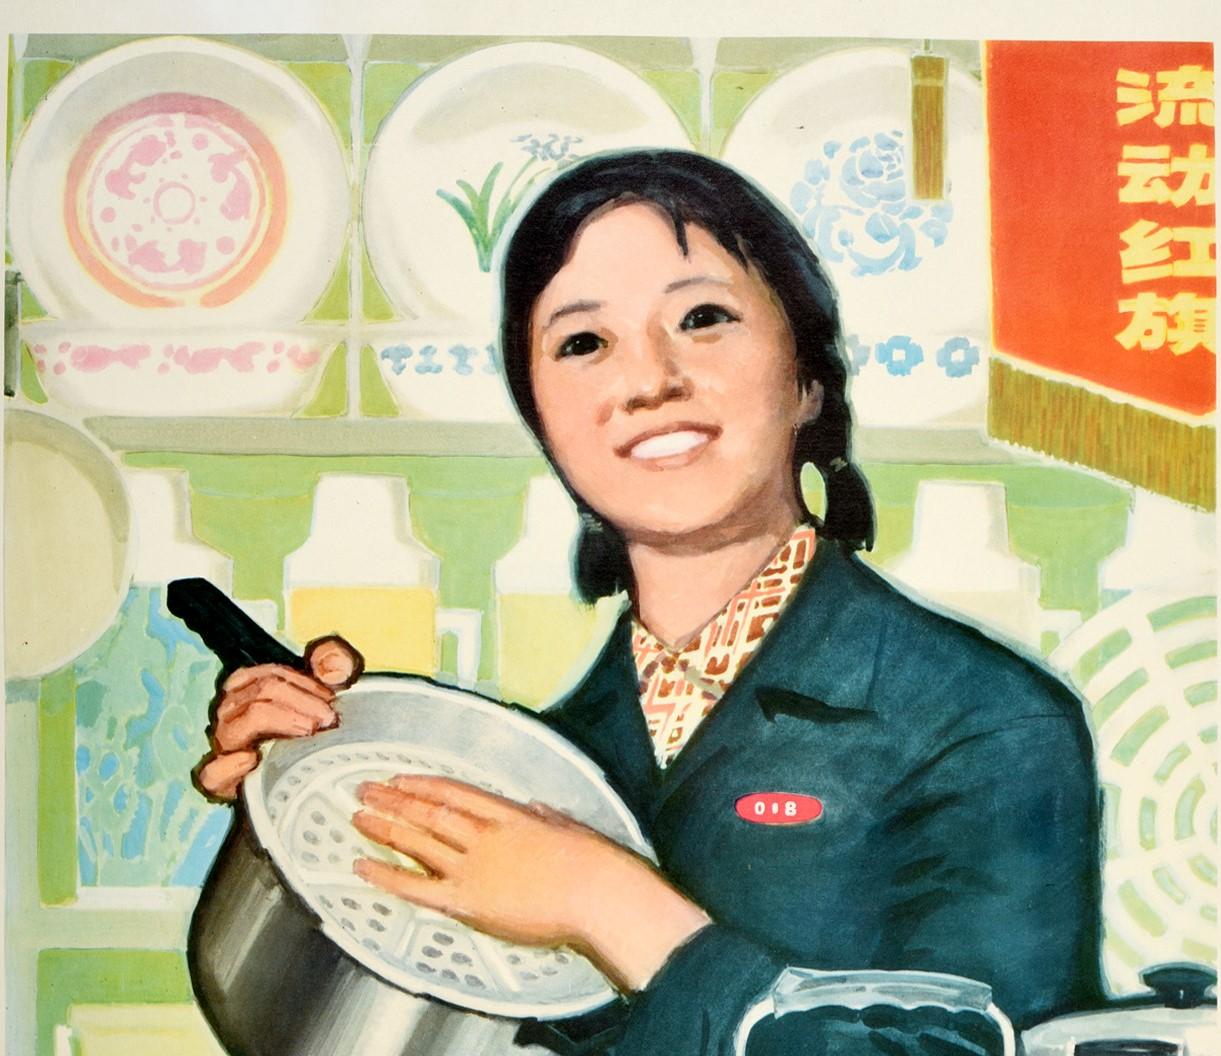 Affiche originale de propagande chinoise vintage - Fournir des produits de qualité et servir le peuple de tout cœur - avec une superbe illustration d'une jeune femme souriante en uniforme de travail présentant une sélection d'équipements de cuisine,